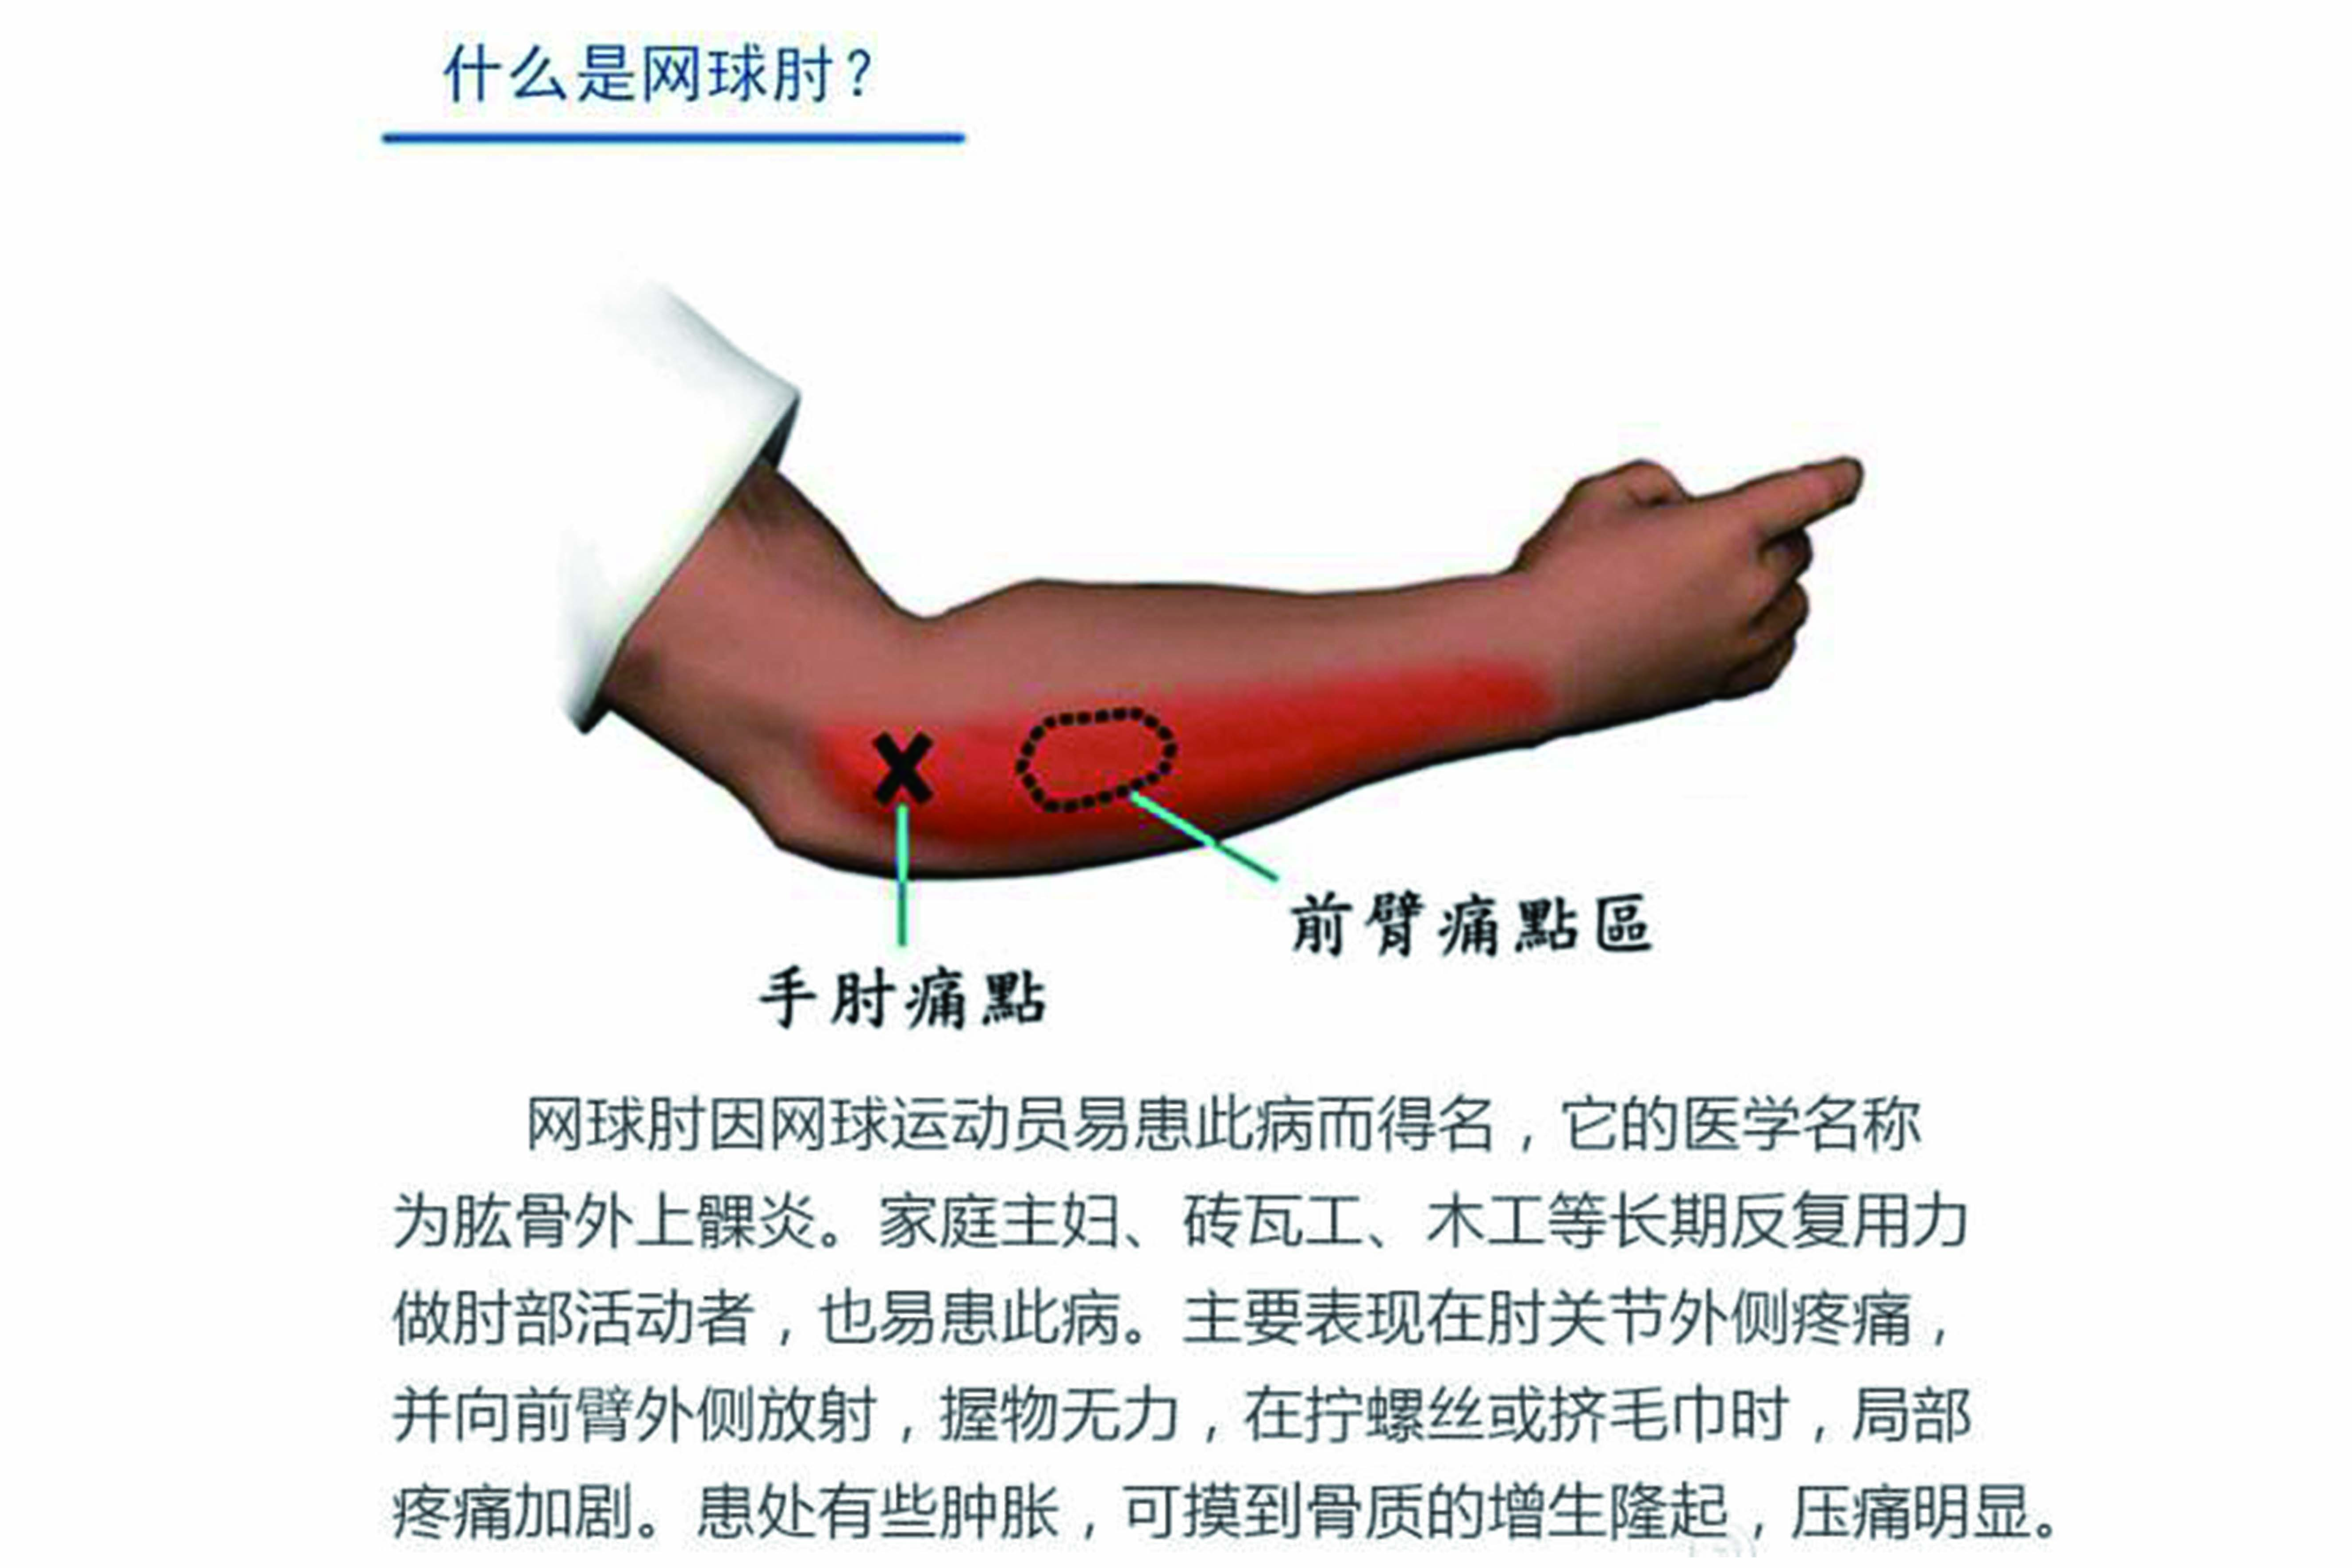 医者用轻柔地滚法,揉法作用于肘后外侧沿前臂背侧往复治疗.